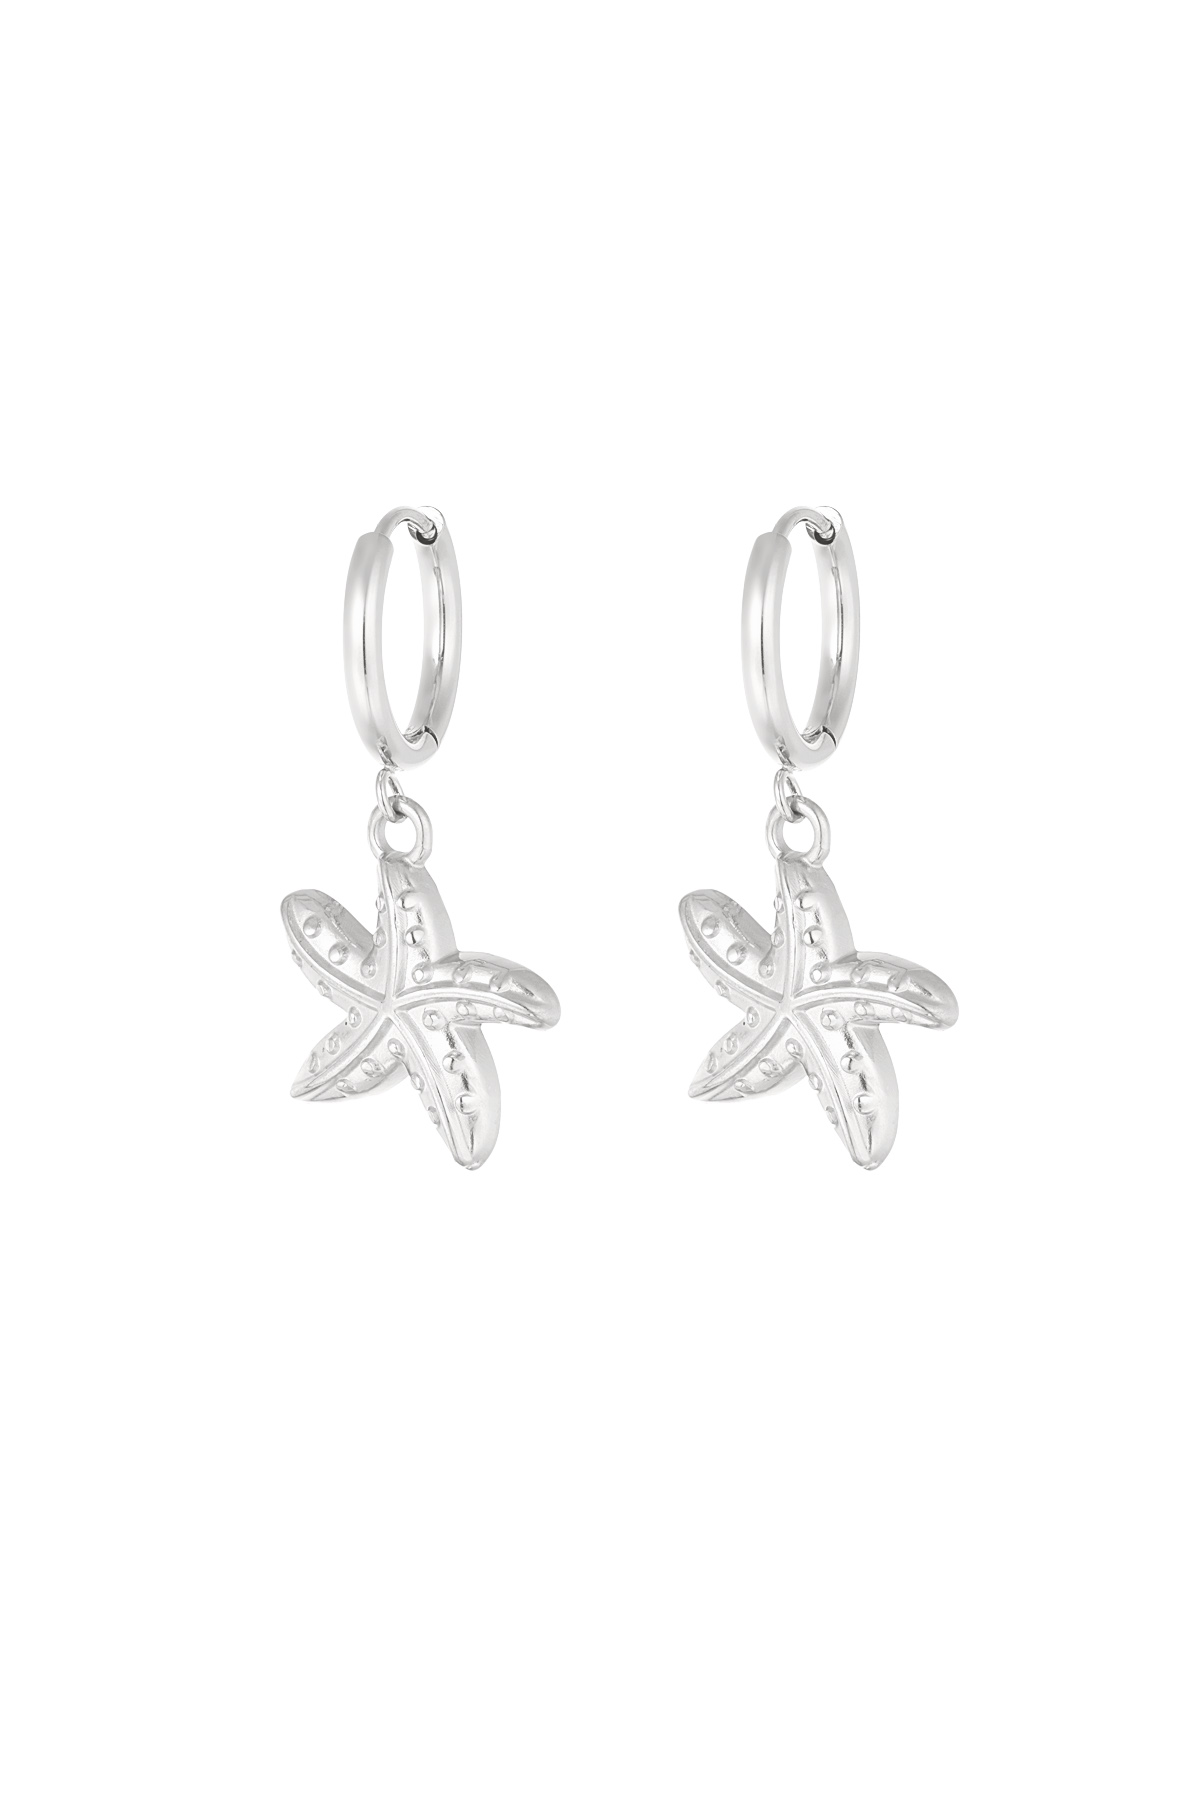 Oorbellen special starfish - zilver h5 